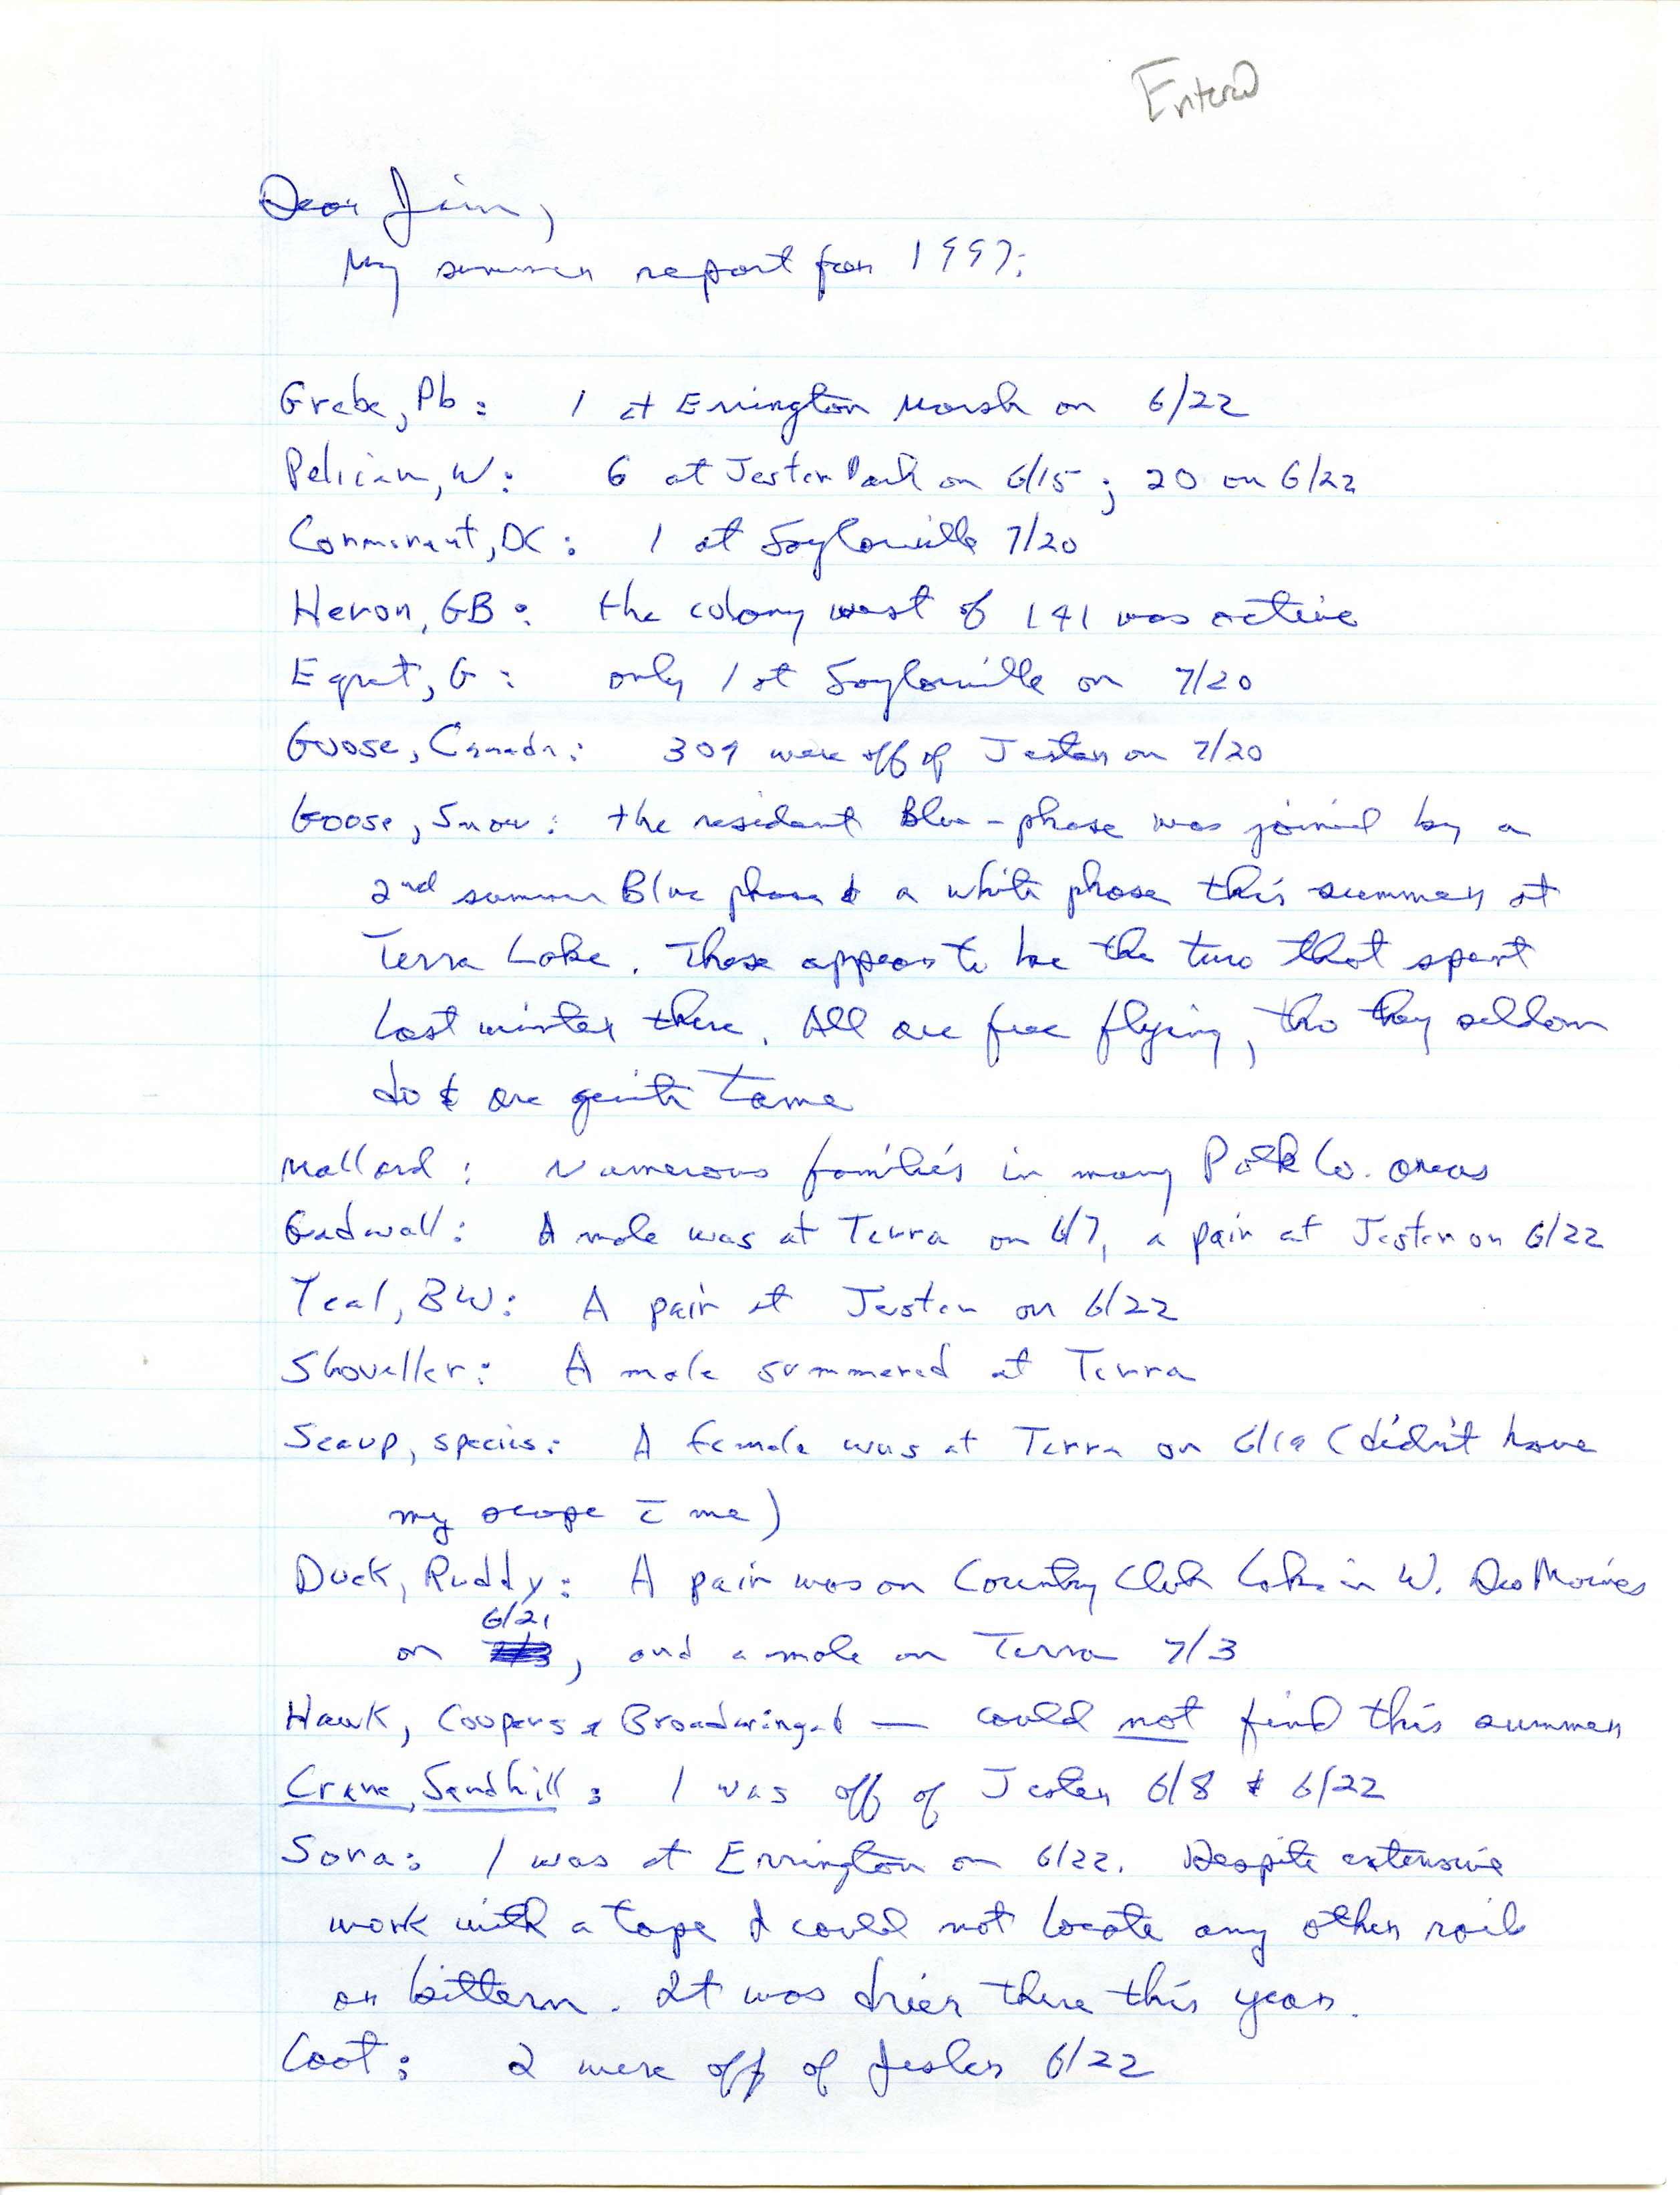 Bery Engebretsen letter to James J. Dinsmore regarding summer bird sightings, summer 1997